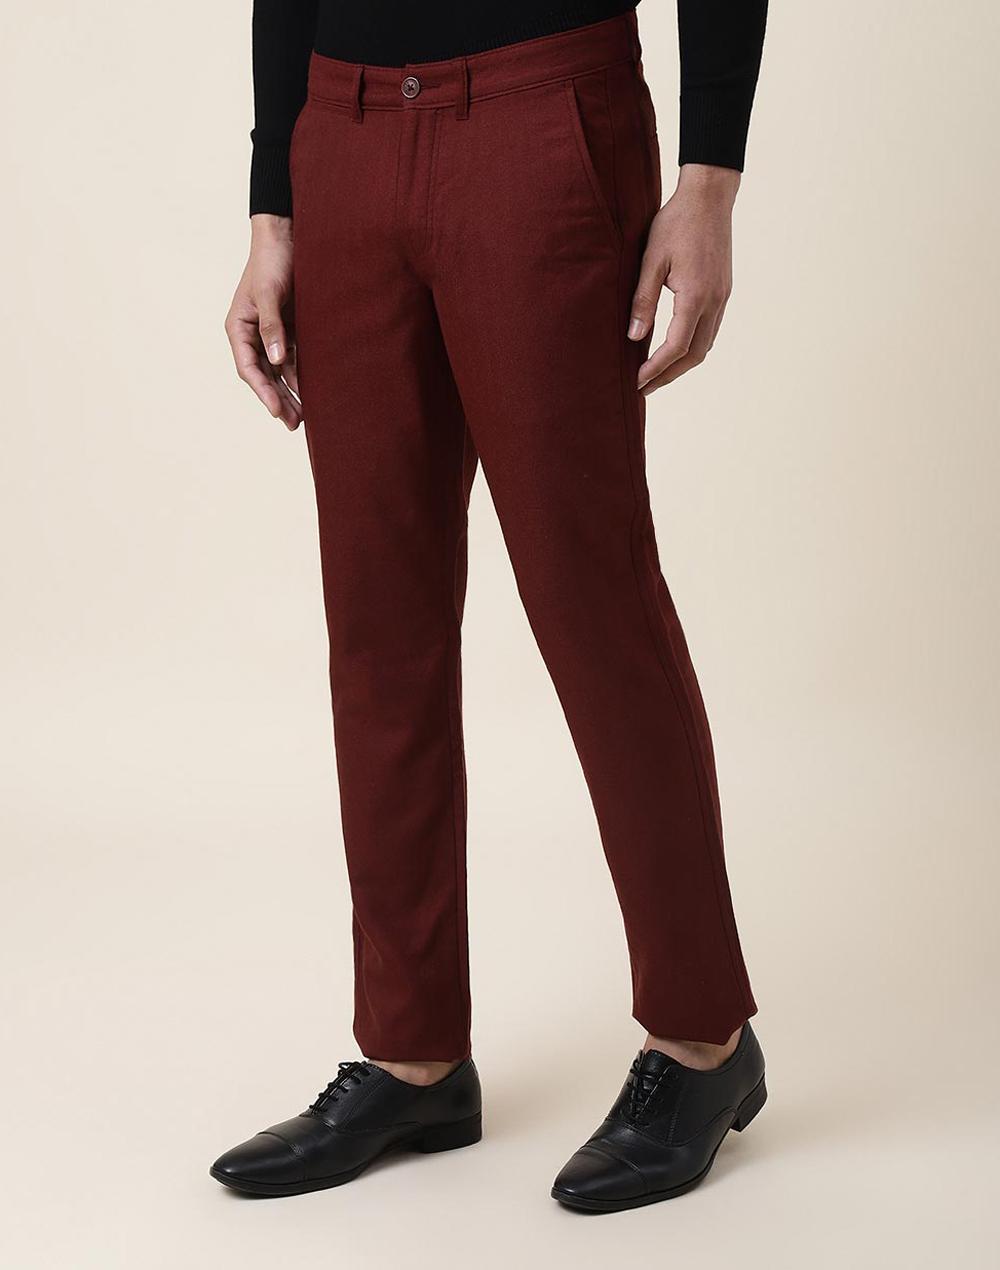 maroon wool slim fit pants